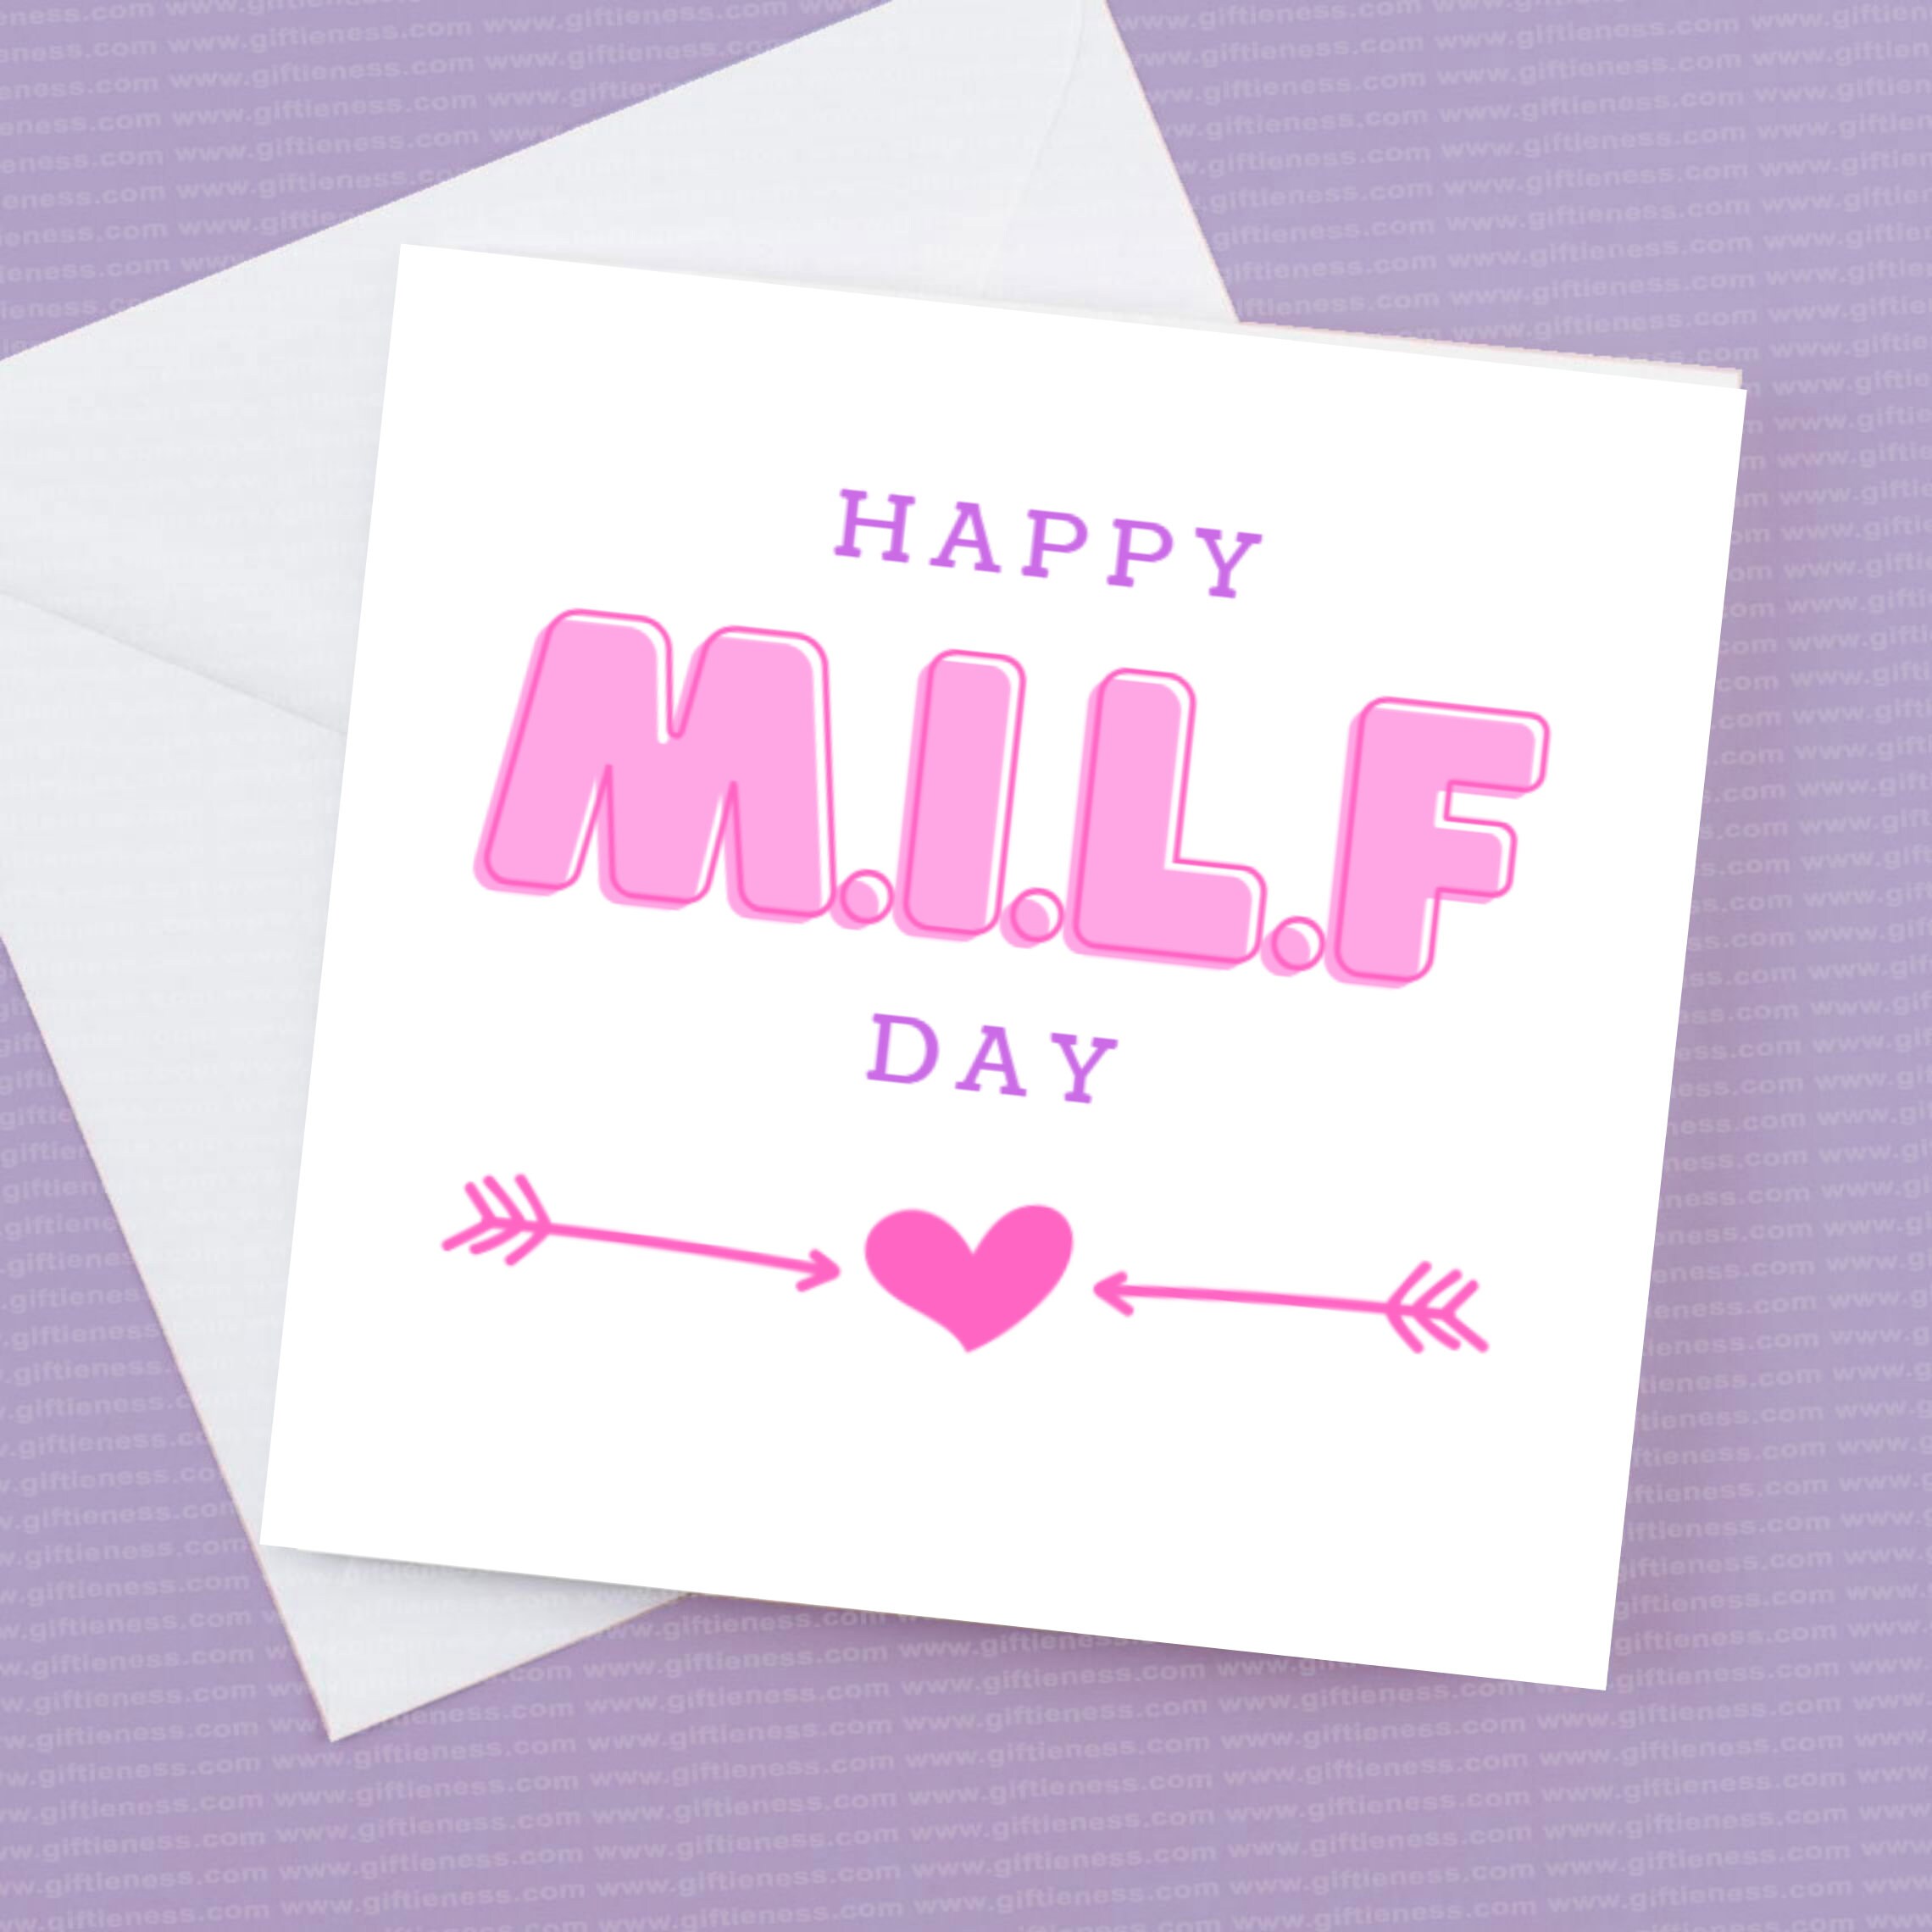 Happy milf day